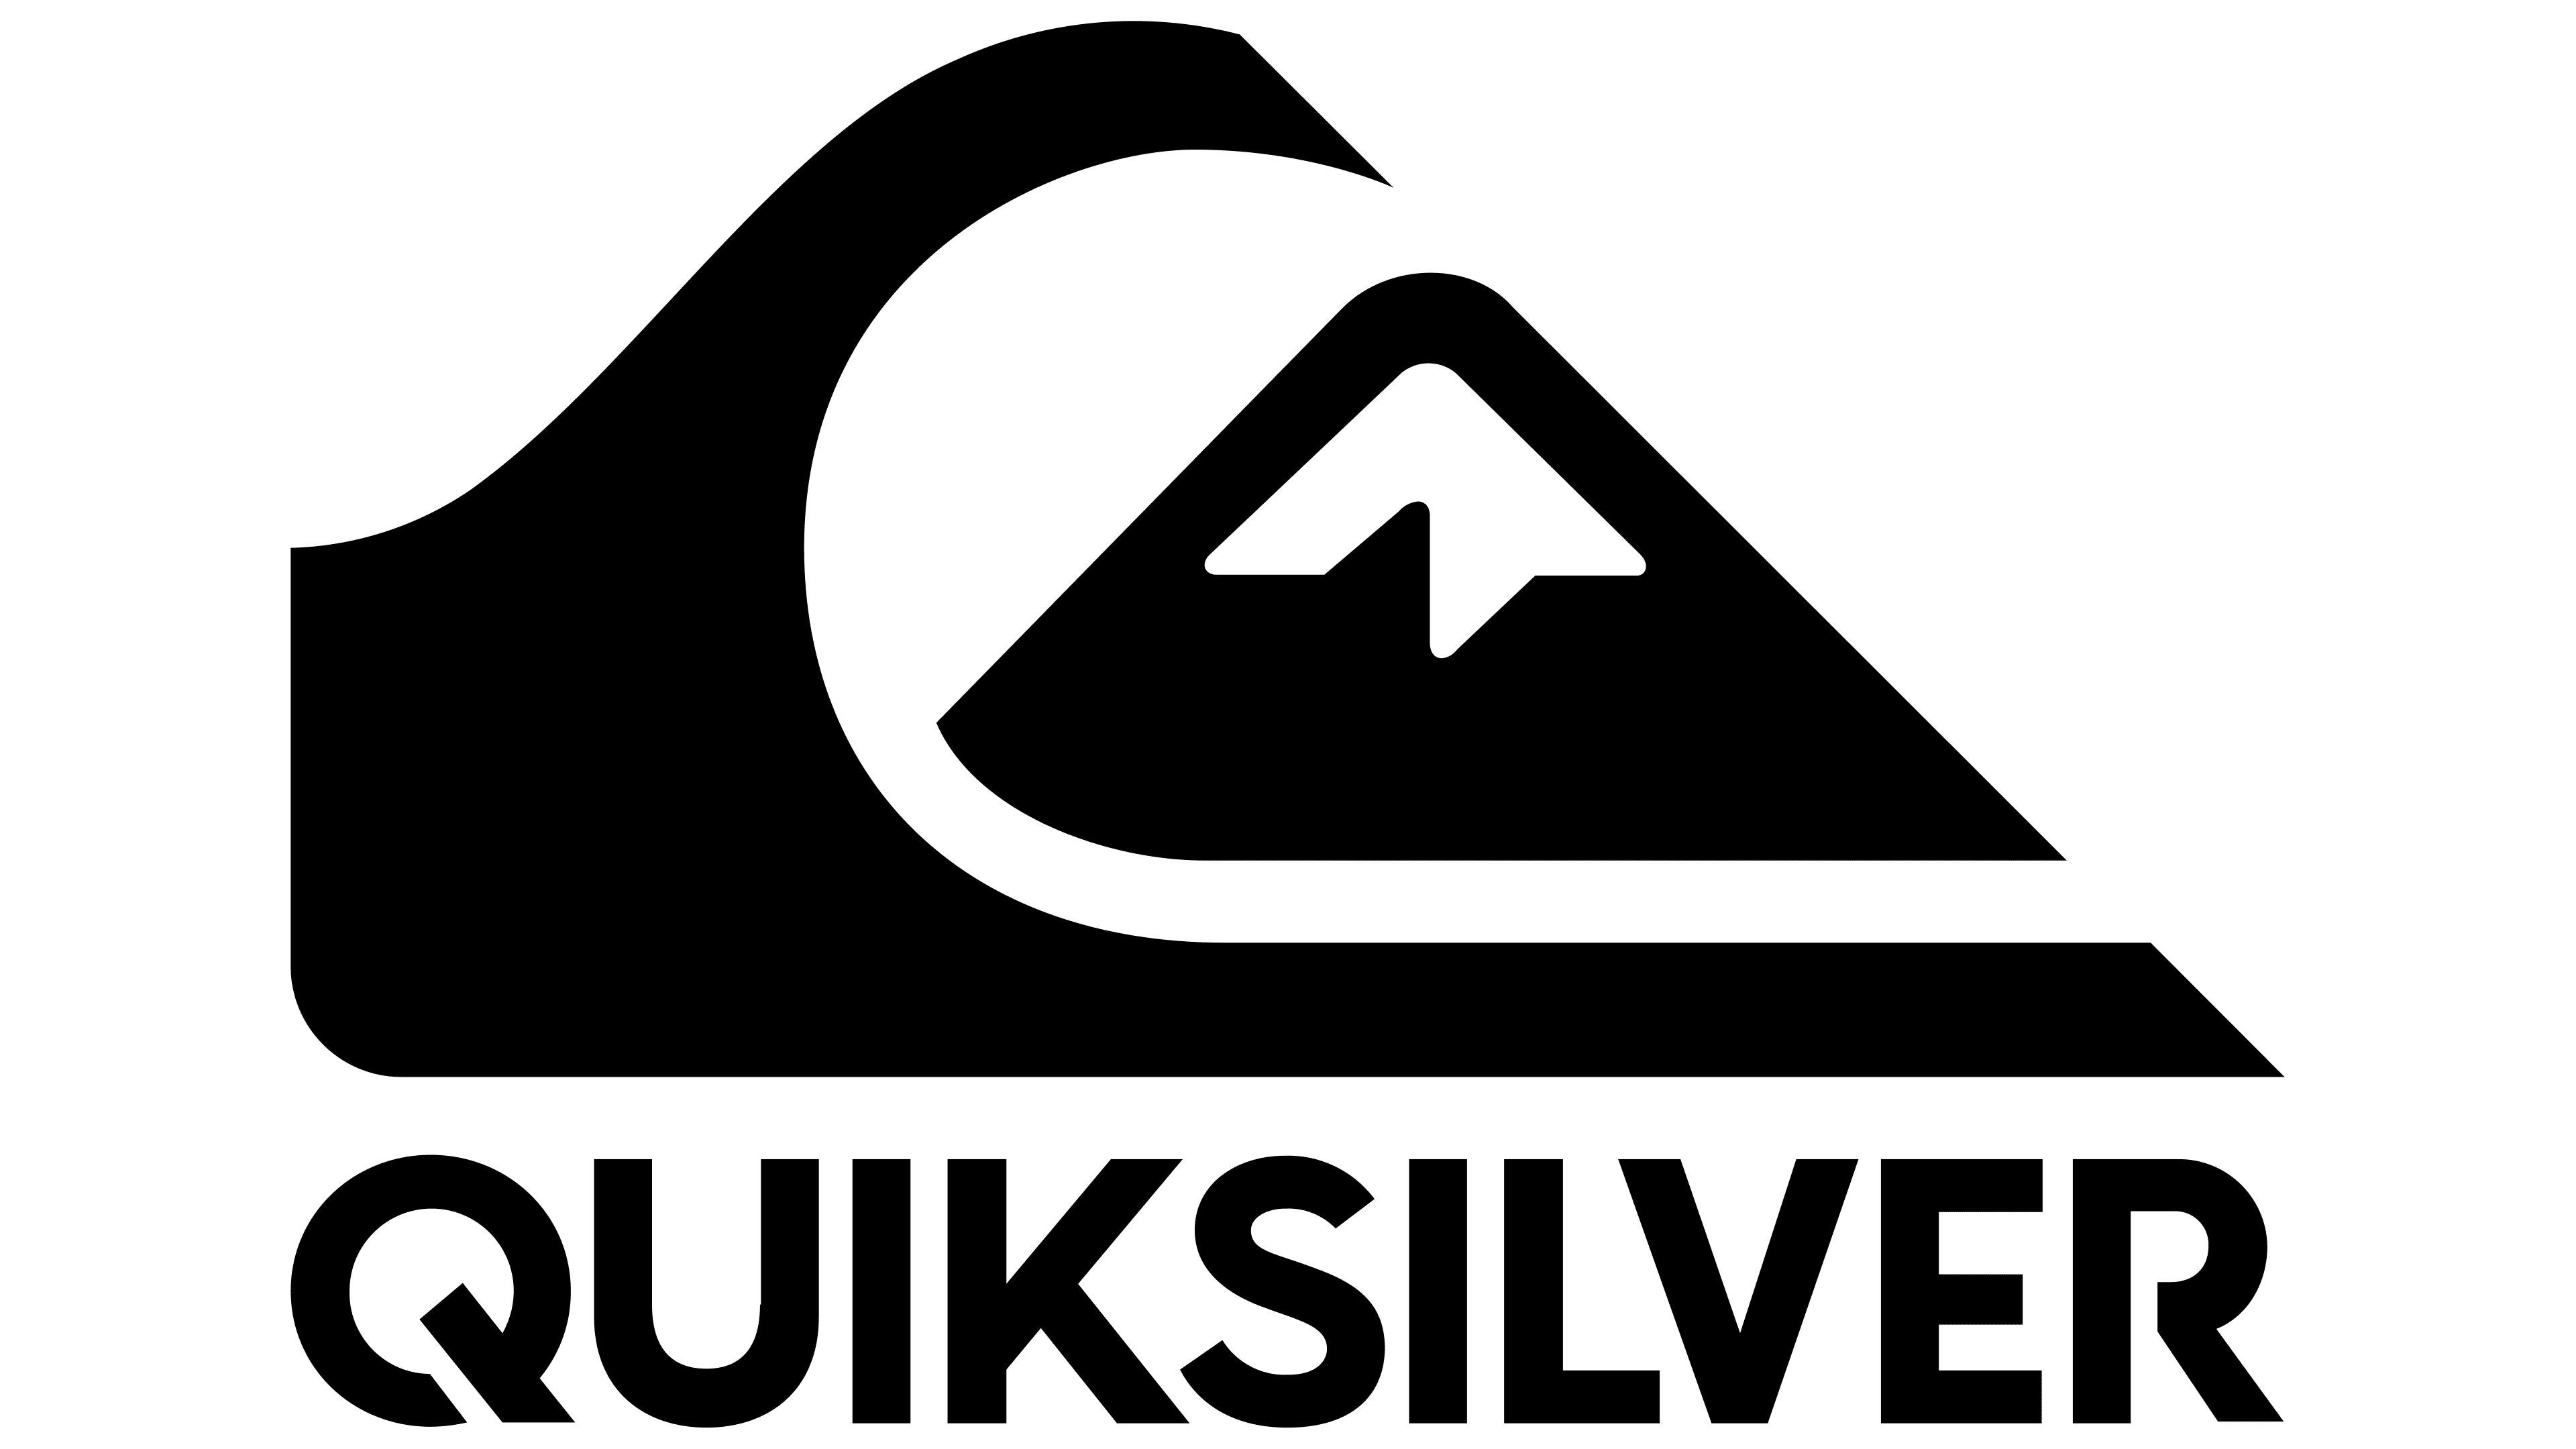 Logo De Quicksilver La Historia Y El Significado Del Logotipo La | My ...